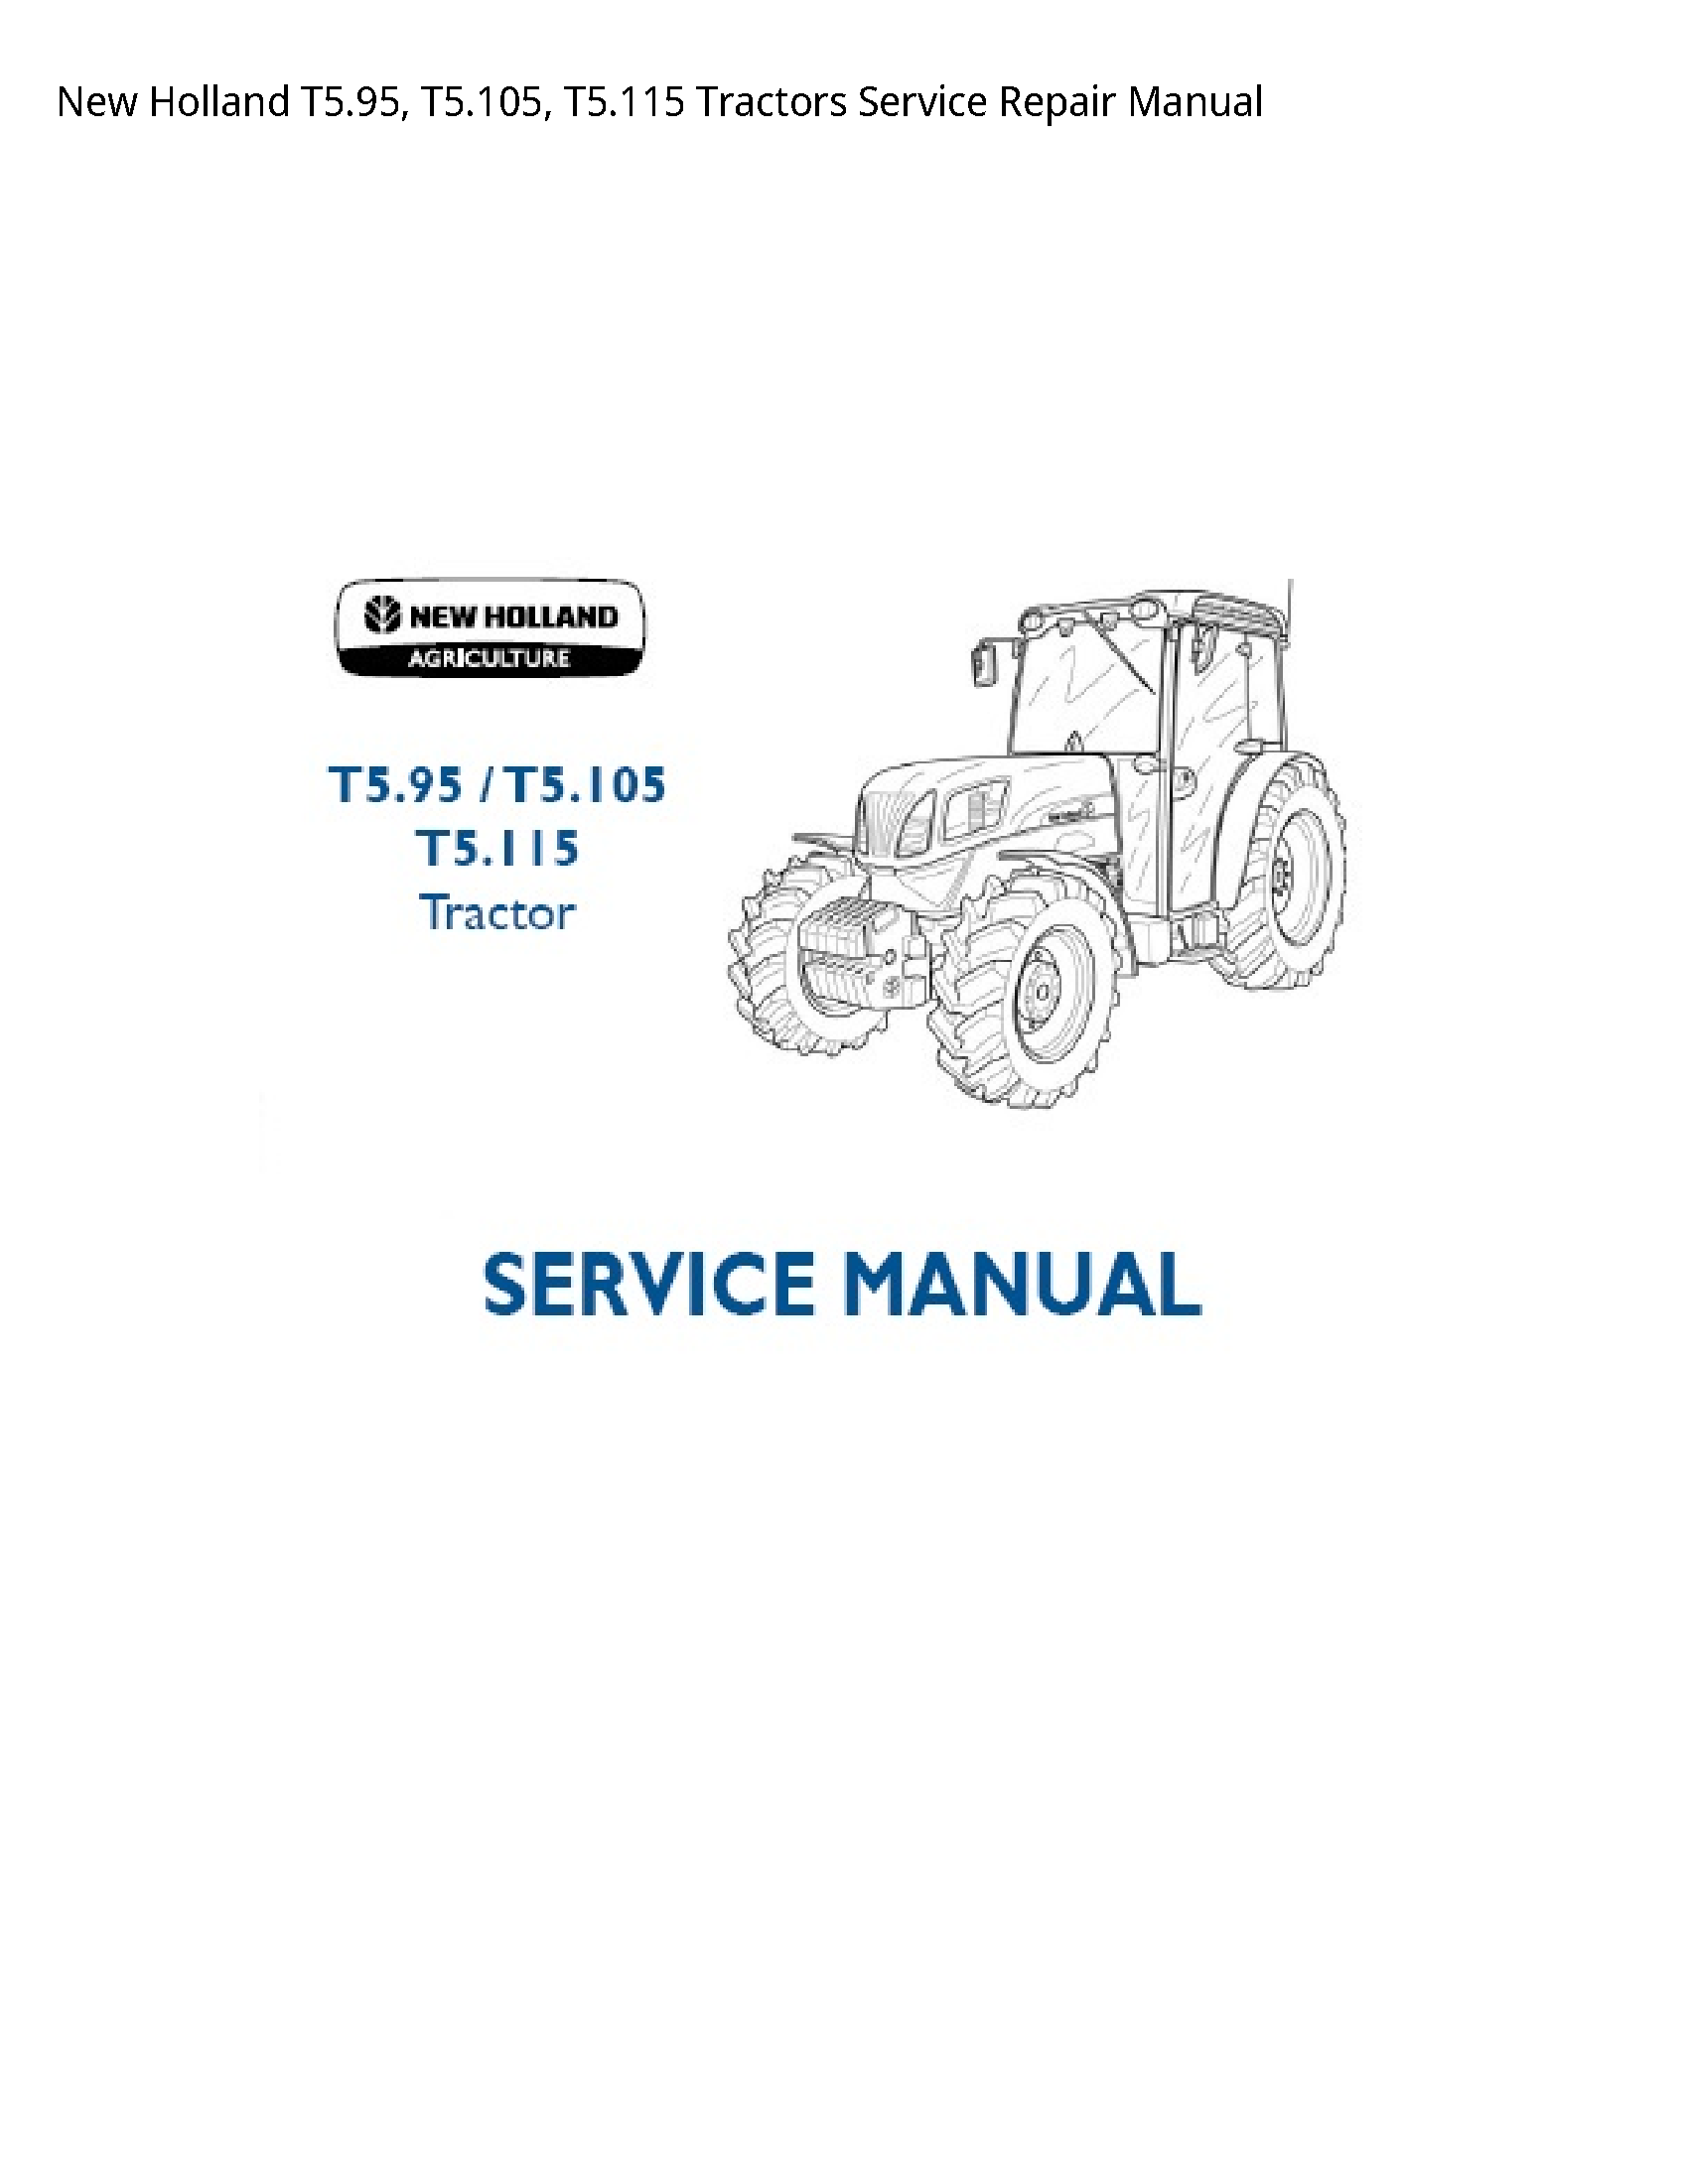 New Holland T5.95 Tractors manual